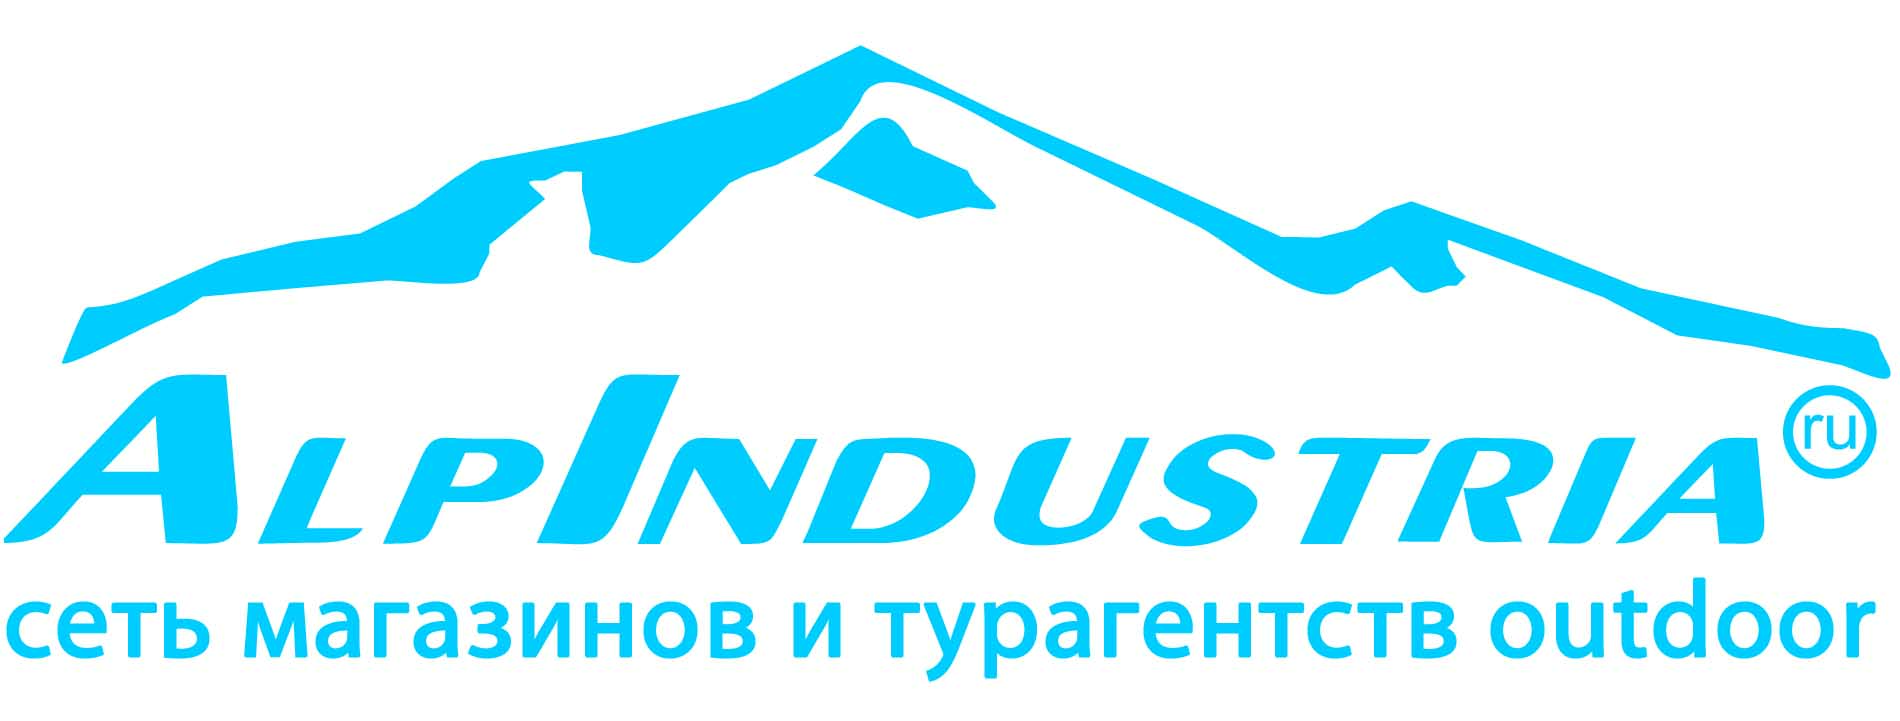 Описание: http://alpfederation.ru/img/images/logo/alpindustria_logo.jpg